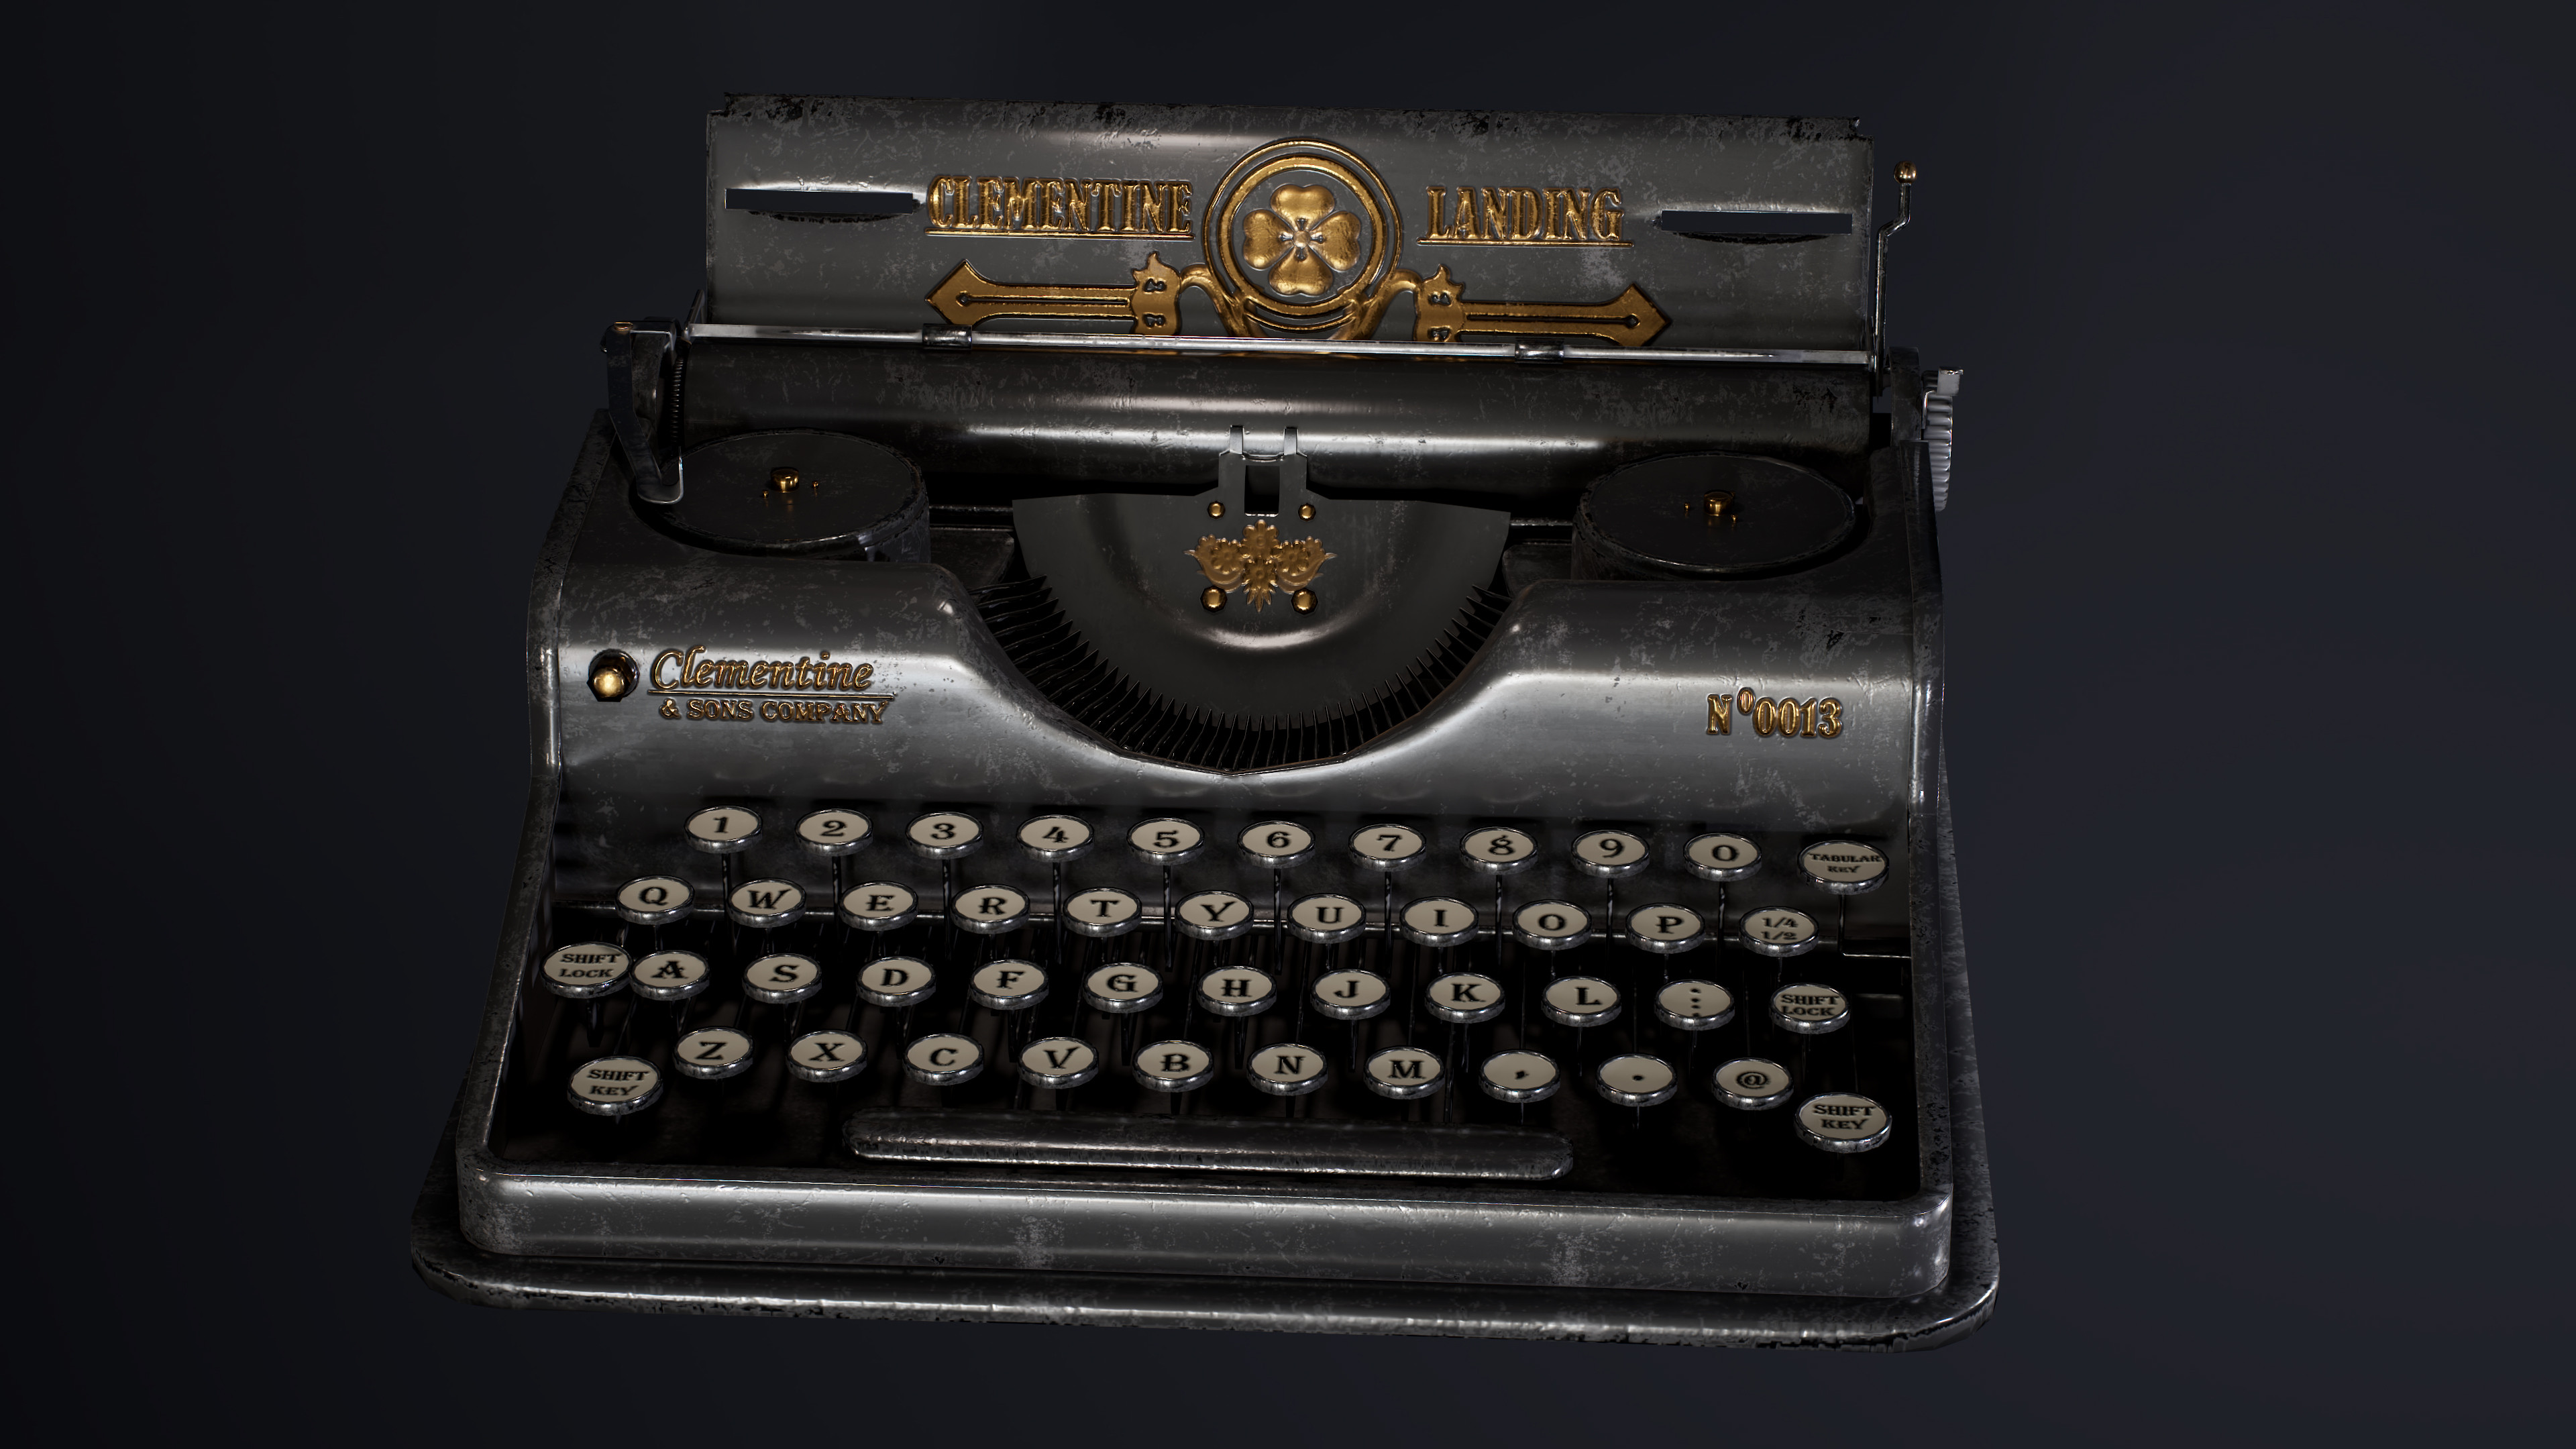 Close up render of a Typewriter.